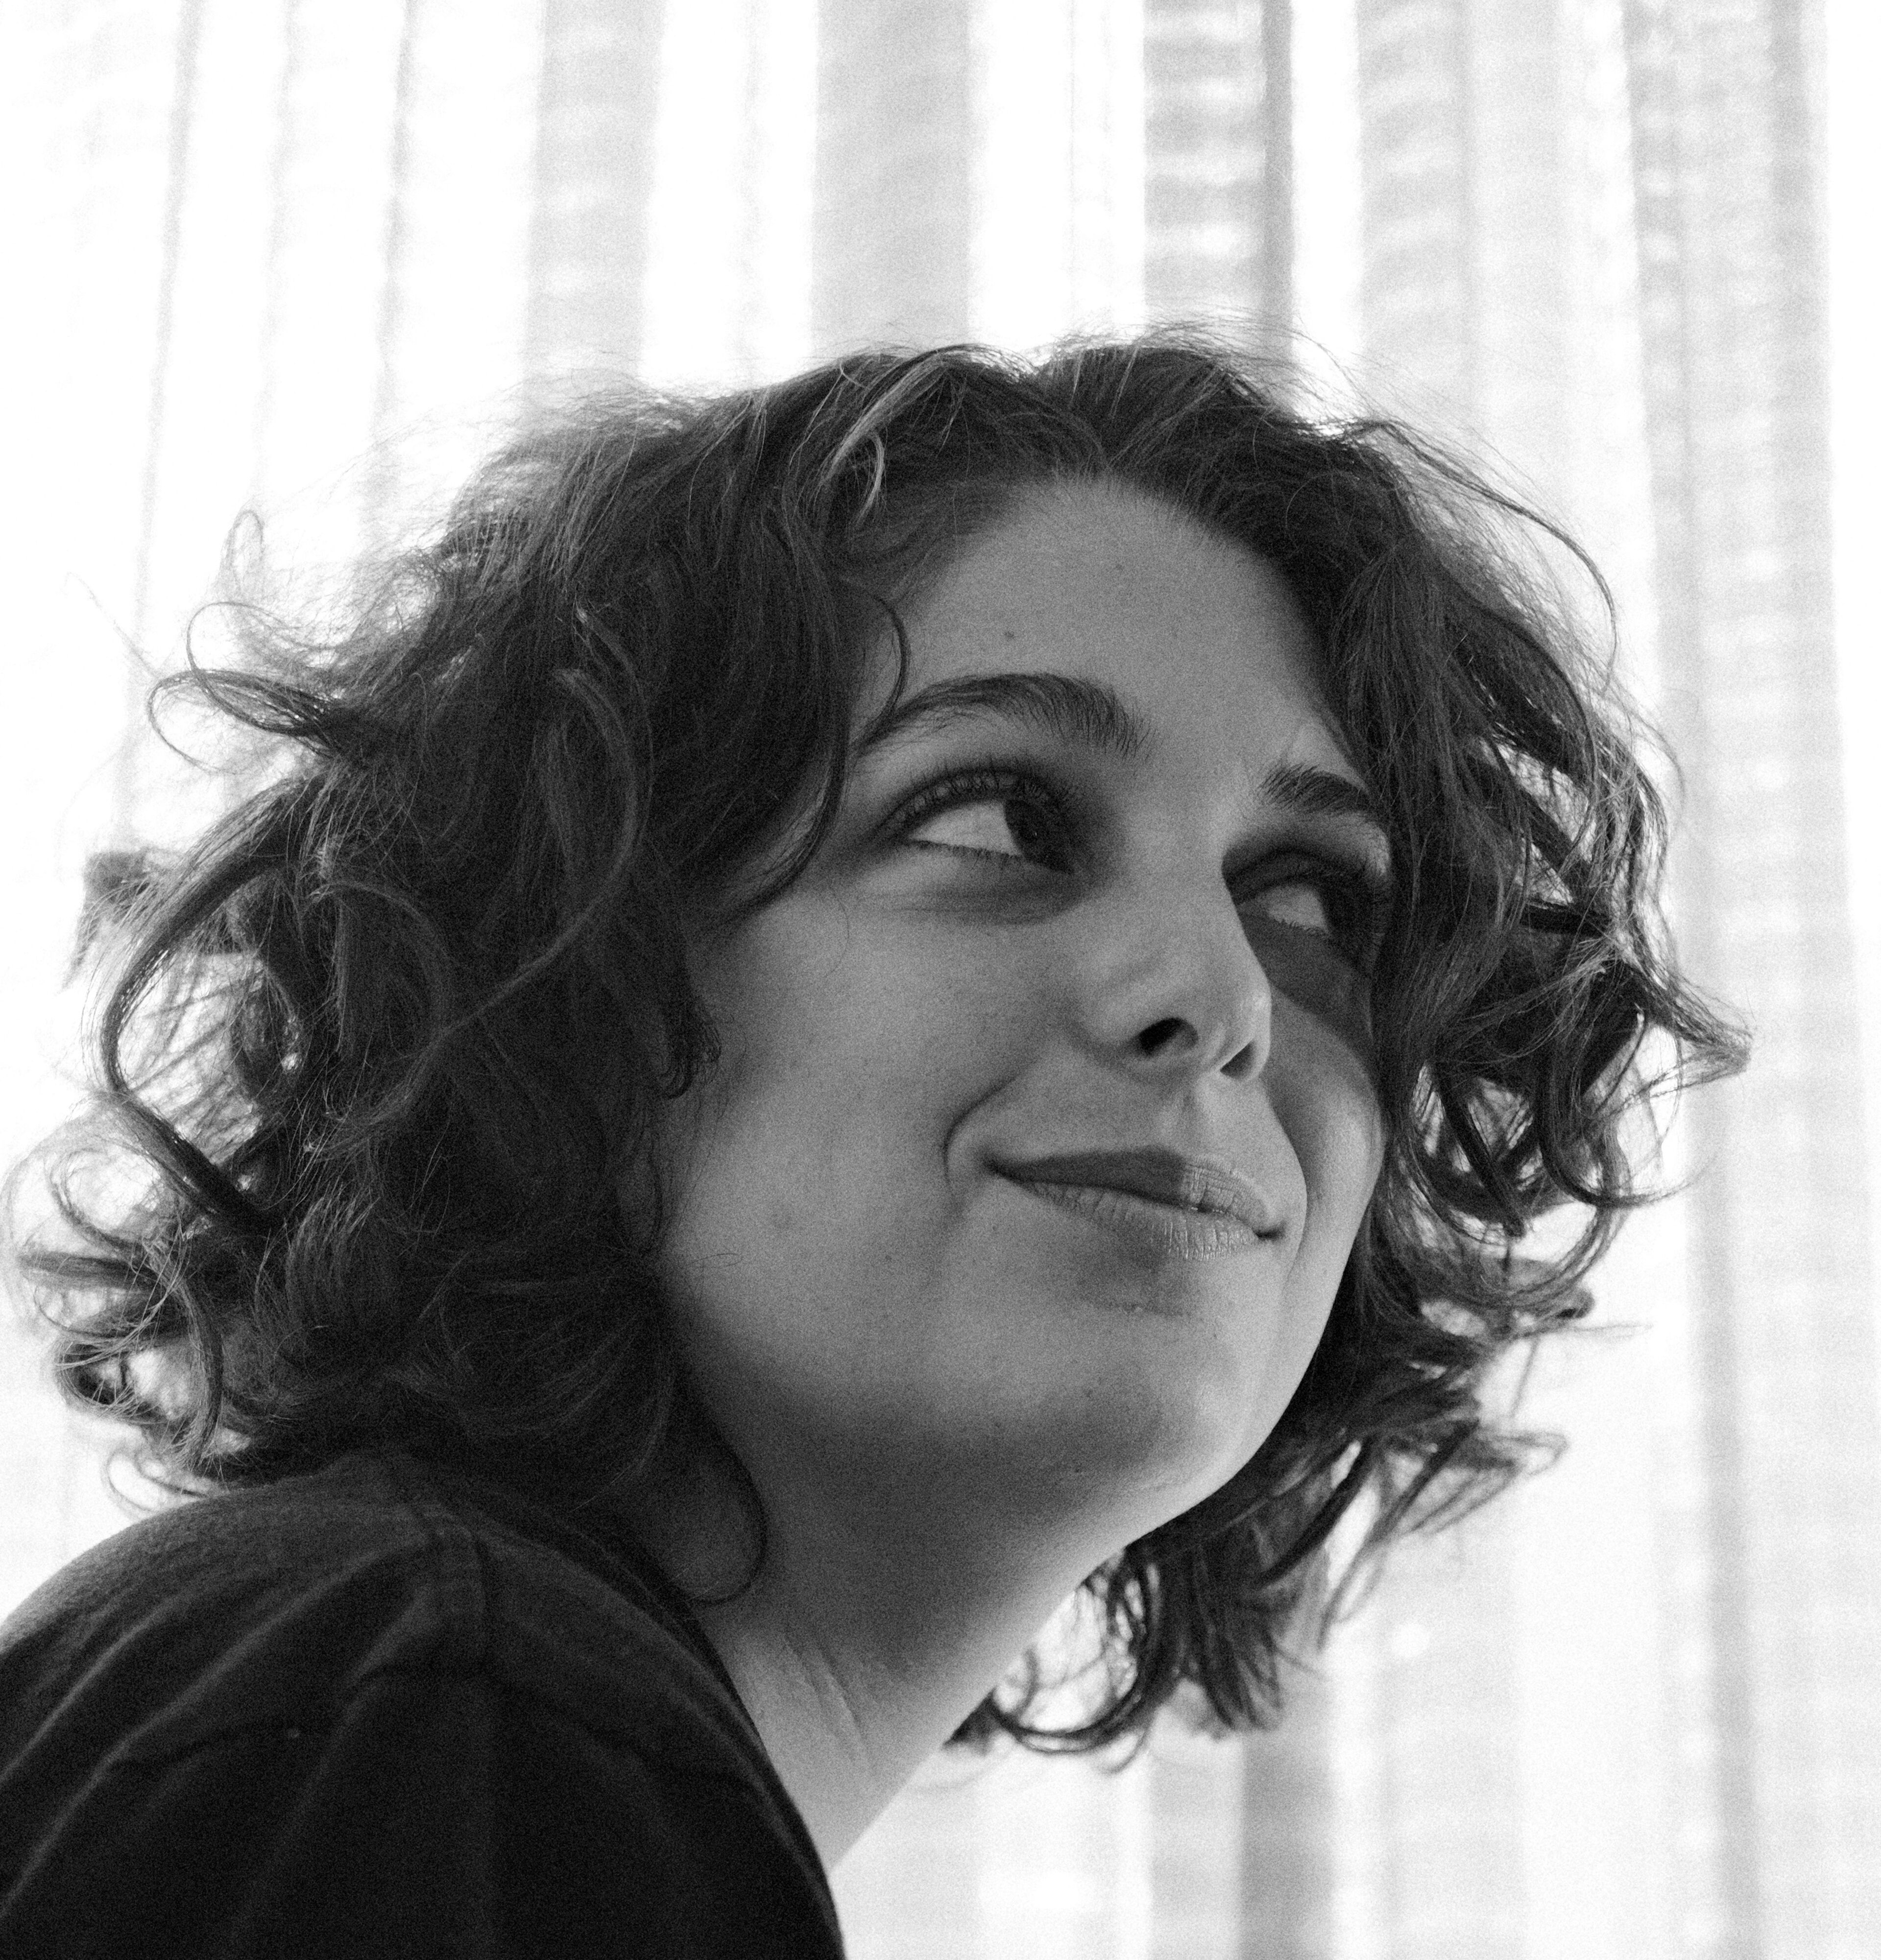 Retrato en blanco y negro de una mujer joven con cabello rizado, sonriendo sutilmente mientras mira hacia el lado, con cortinas translúcidas difuminando la luz de fondo.